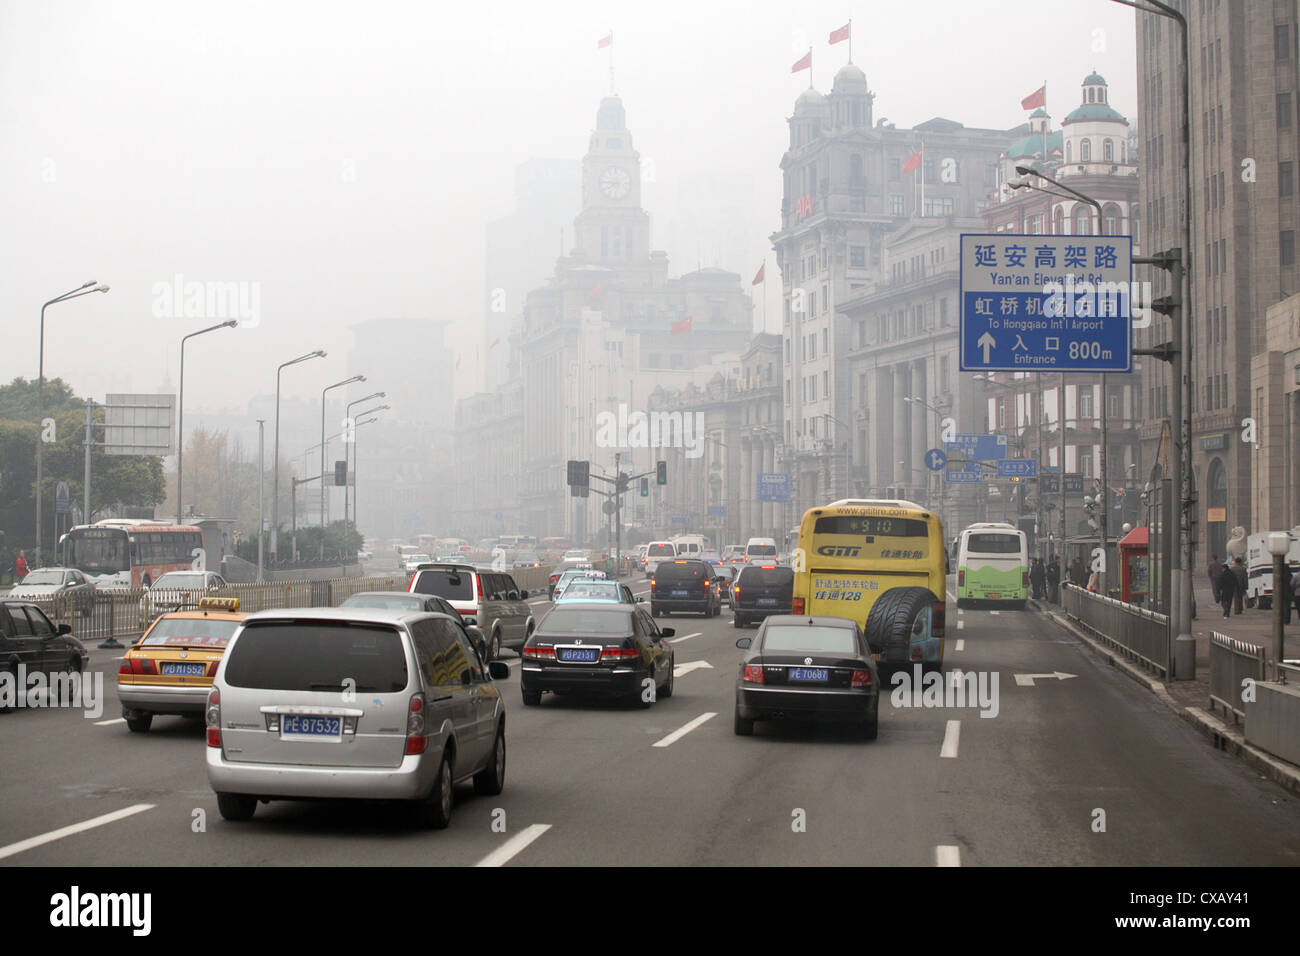 Shanghai, l'heure de pointe dans le centre-ville, sur le Bund dans le brouillard Banque D'Images